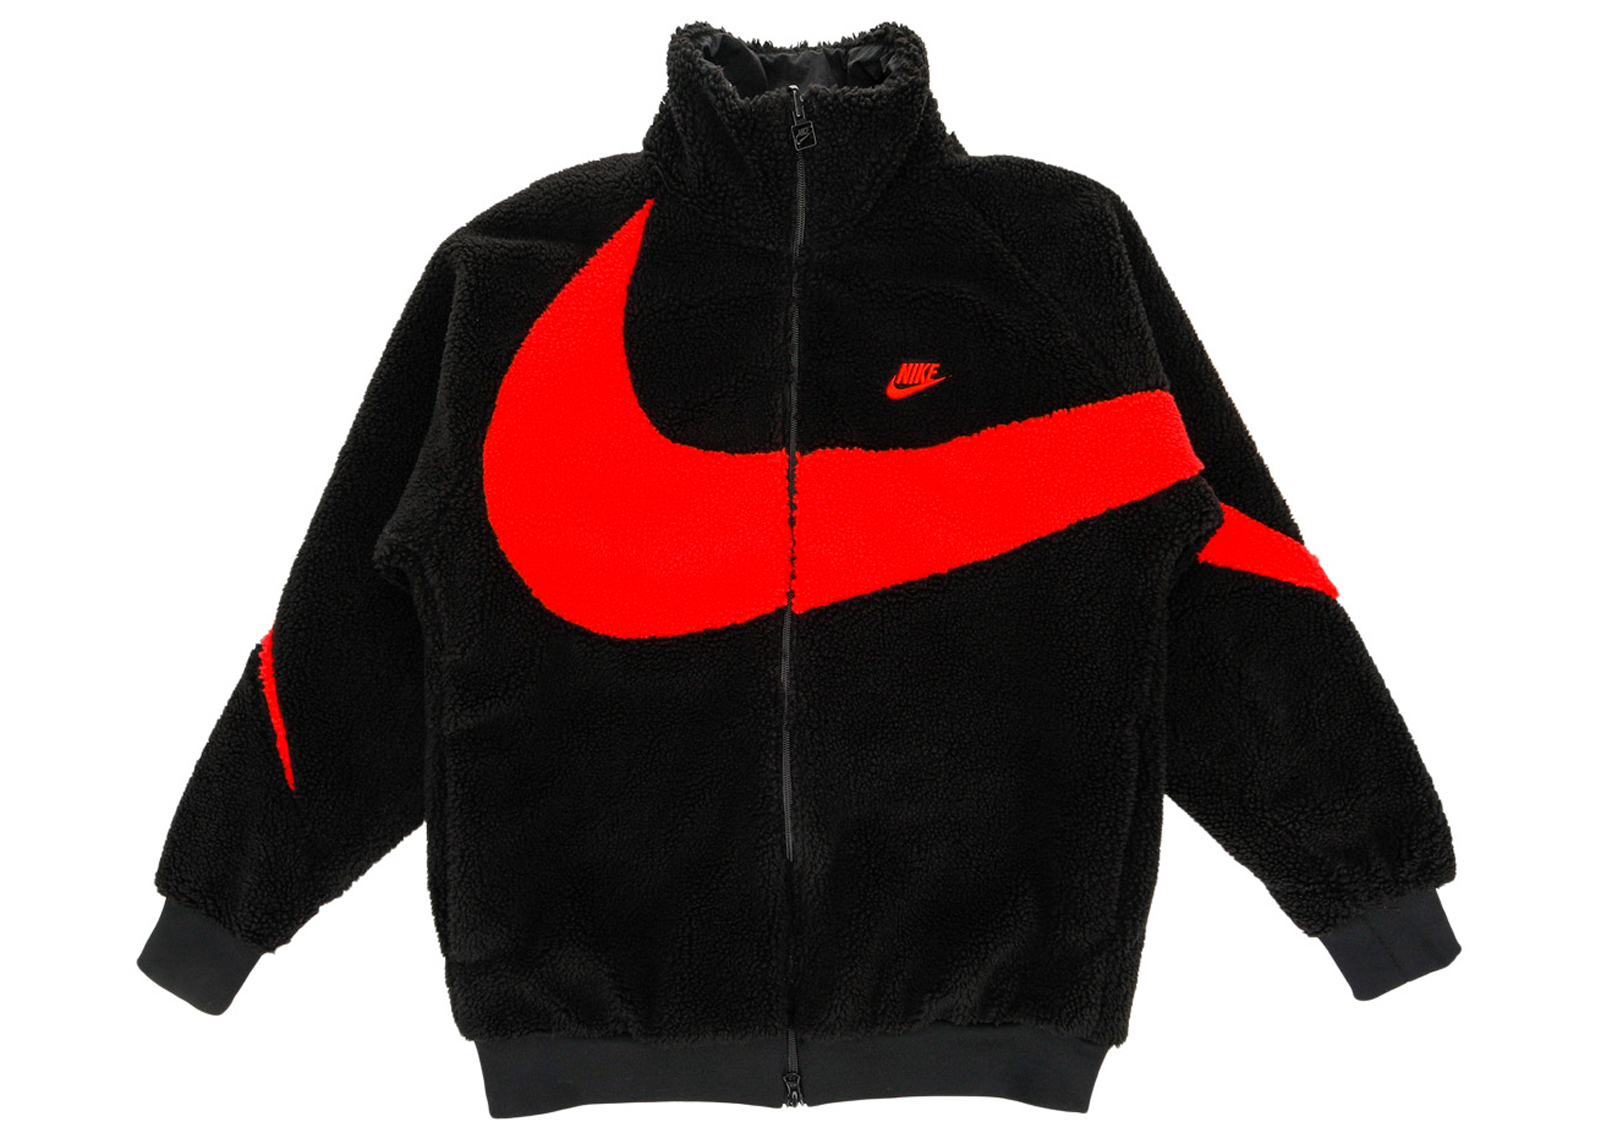 Nike Big Swoosh Reversible Boa Jacket (Asia Sizing) Black Chili Red